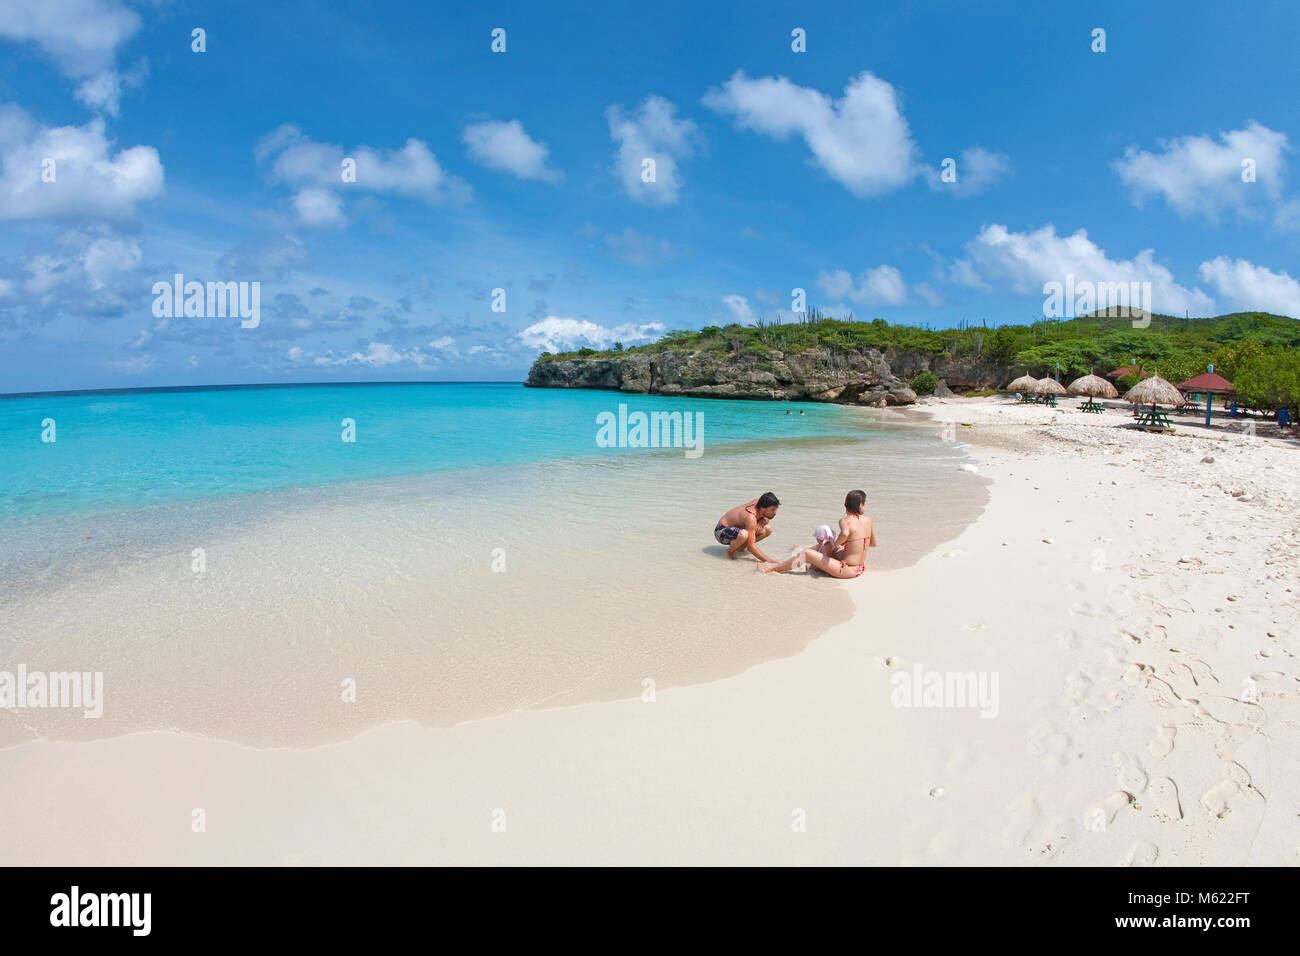 Les touristes à la plage populaire 'Grote Knip', Curacao, Antilles, Caraïbes, mer des Caraïbes Banque D'Images